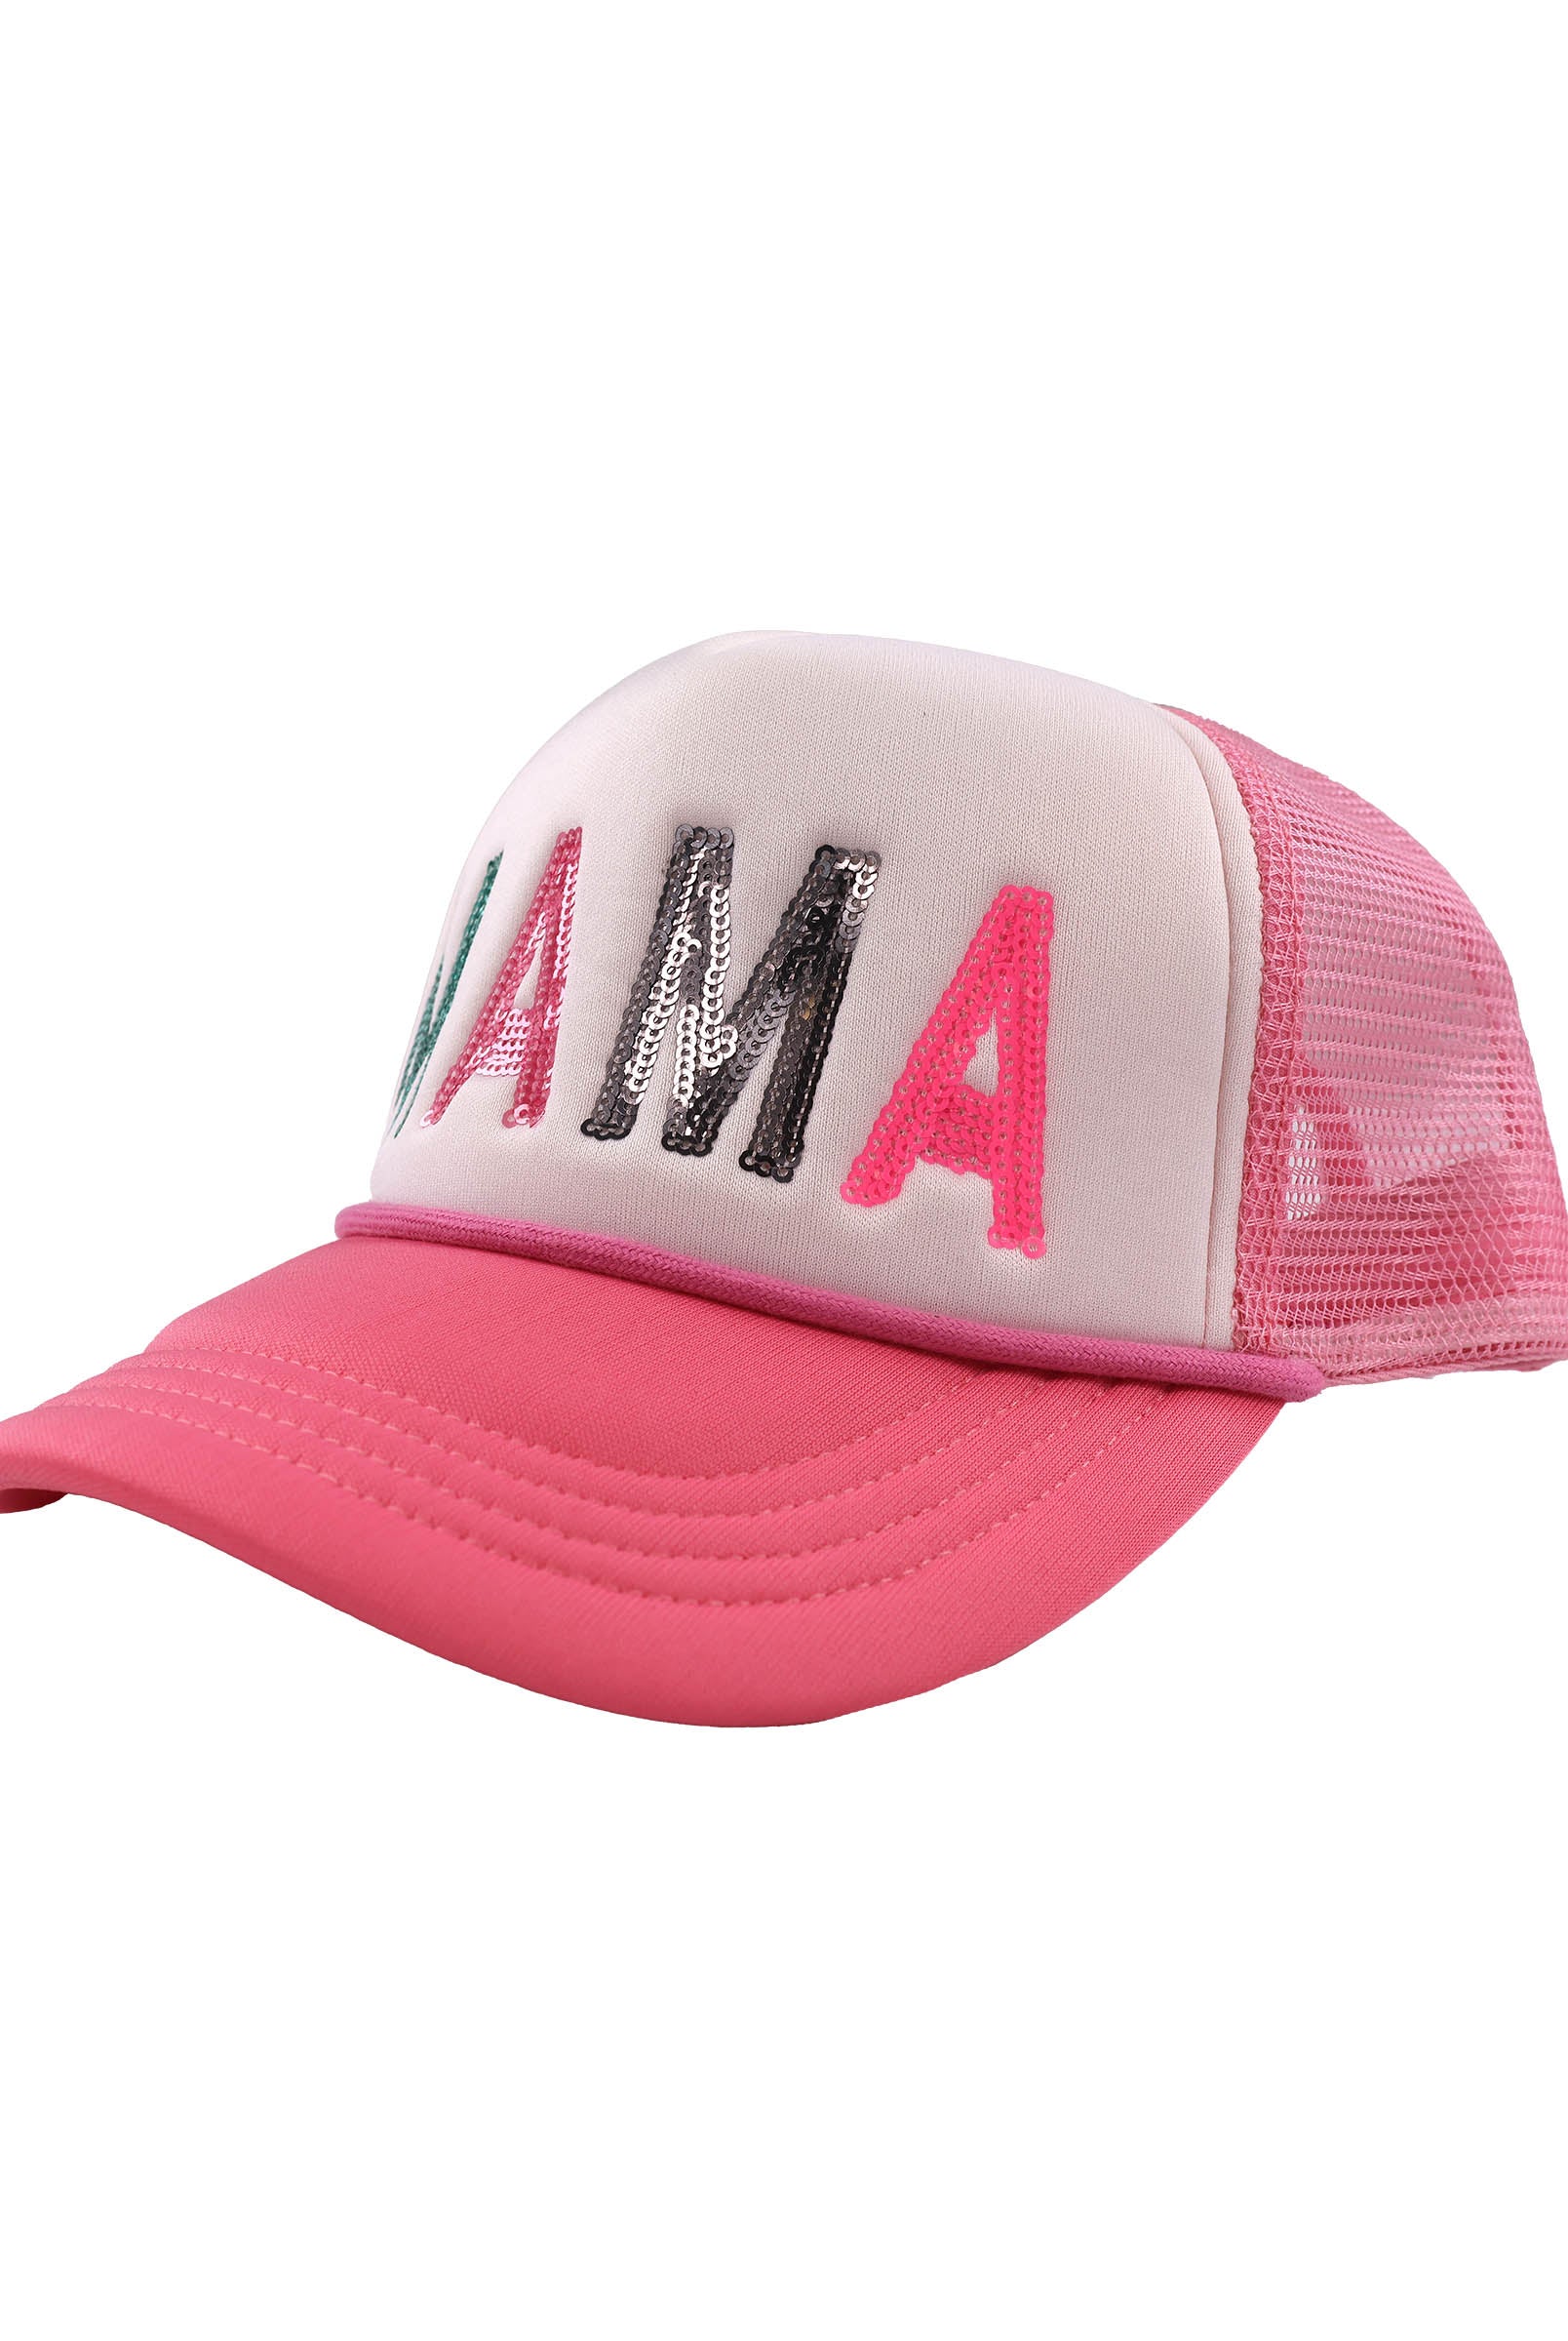 SS Mama Trucker Cap-Hats-Deadwood South Boutique & Company-Deadwood South Boutique, Women's Fashion Boutique in Henderson, TX